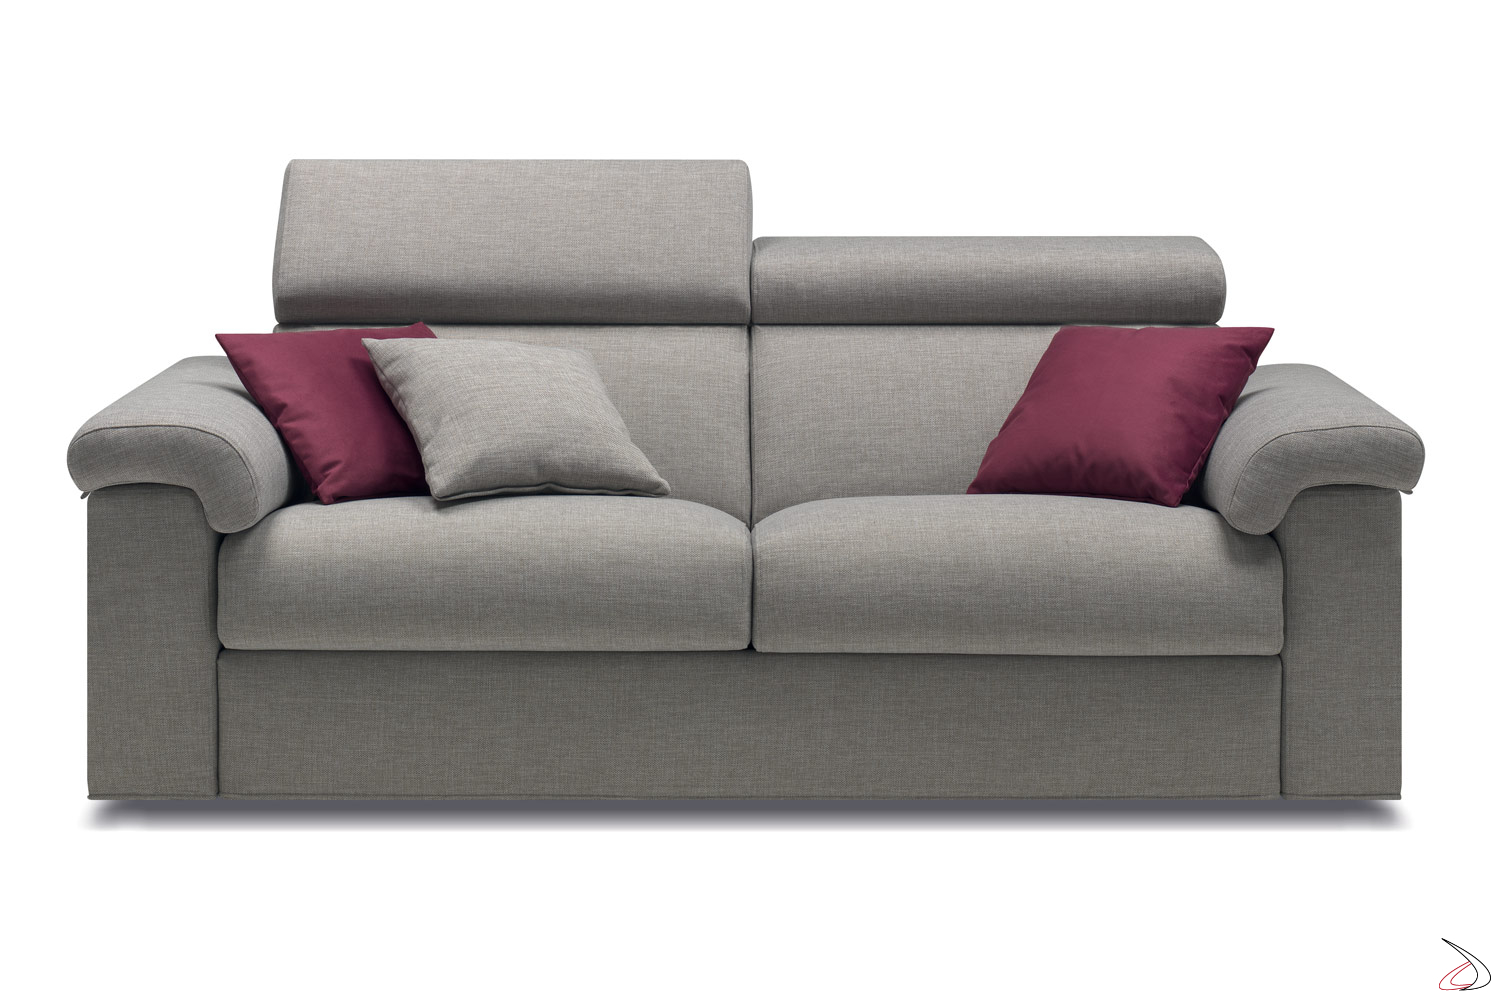 Divano 2 Posti Con Letto.Riftac Sofa Bed With Pillows Holder Toparredi Arredo Design Online